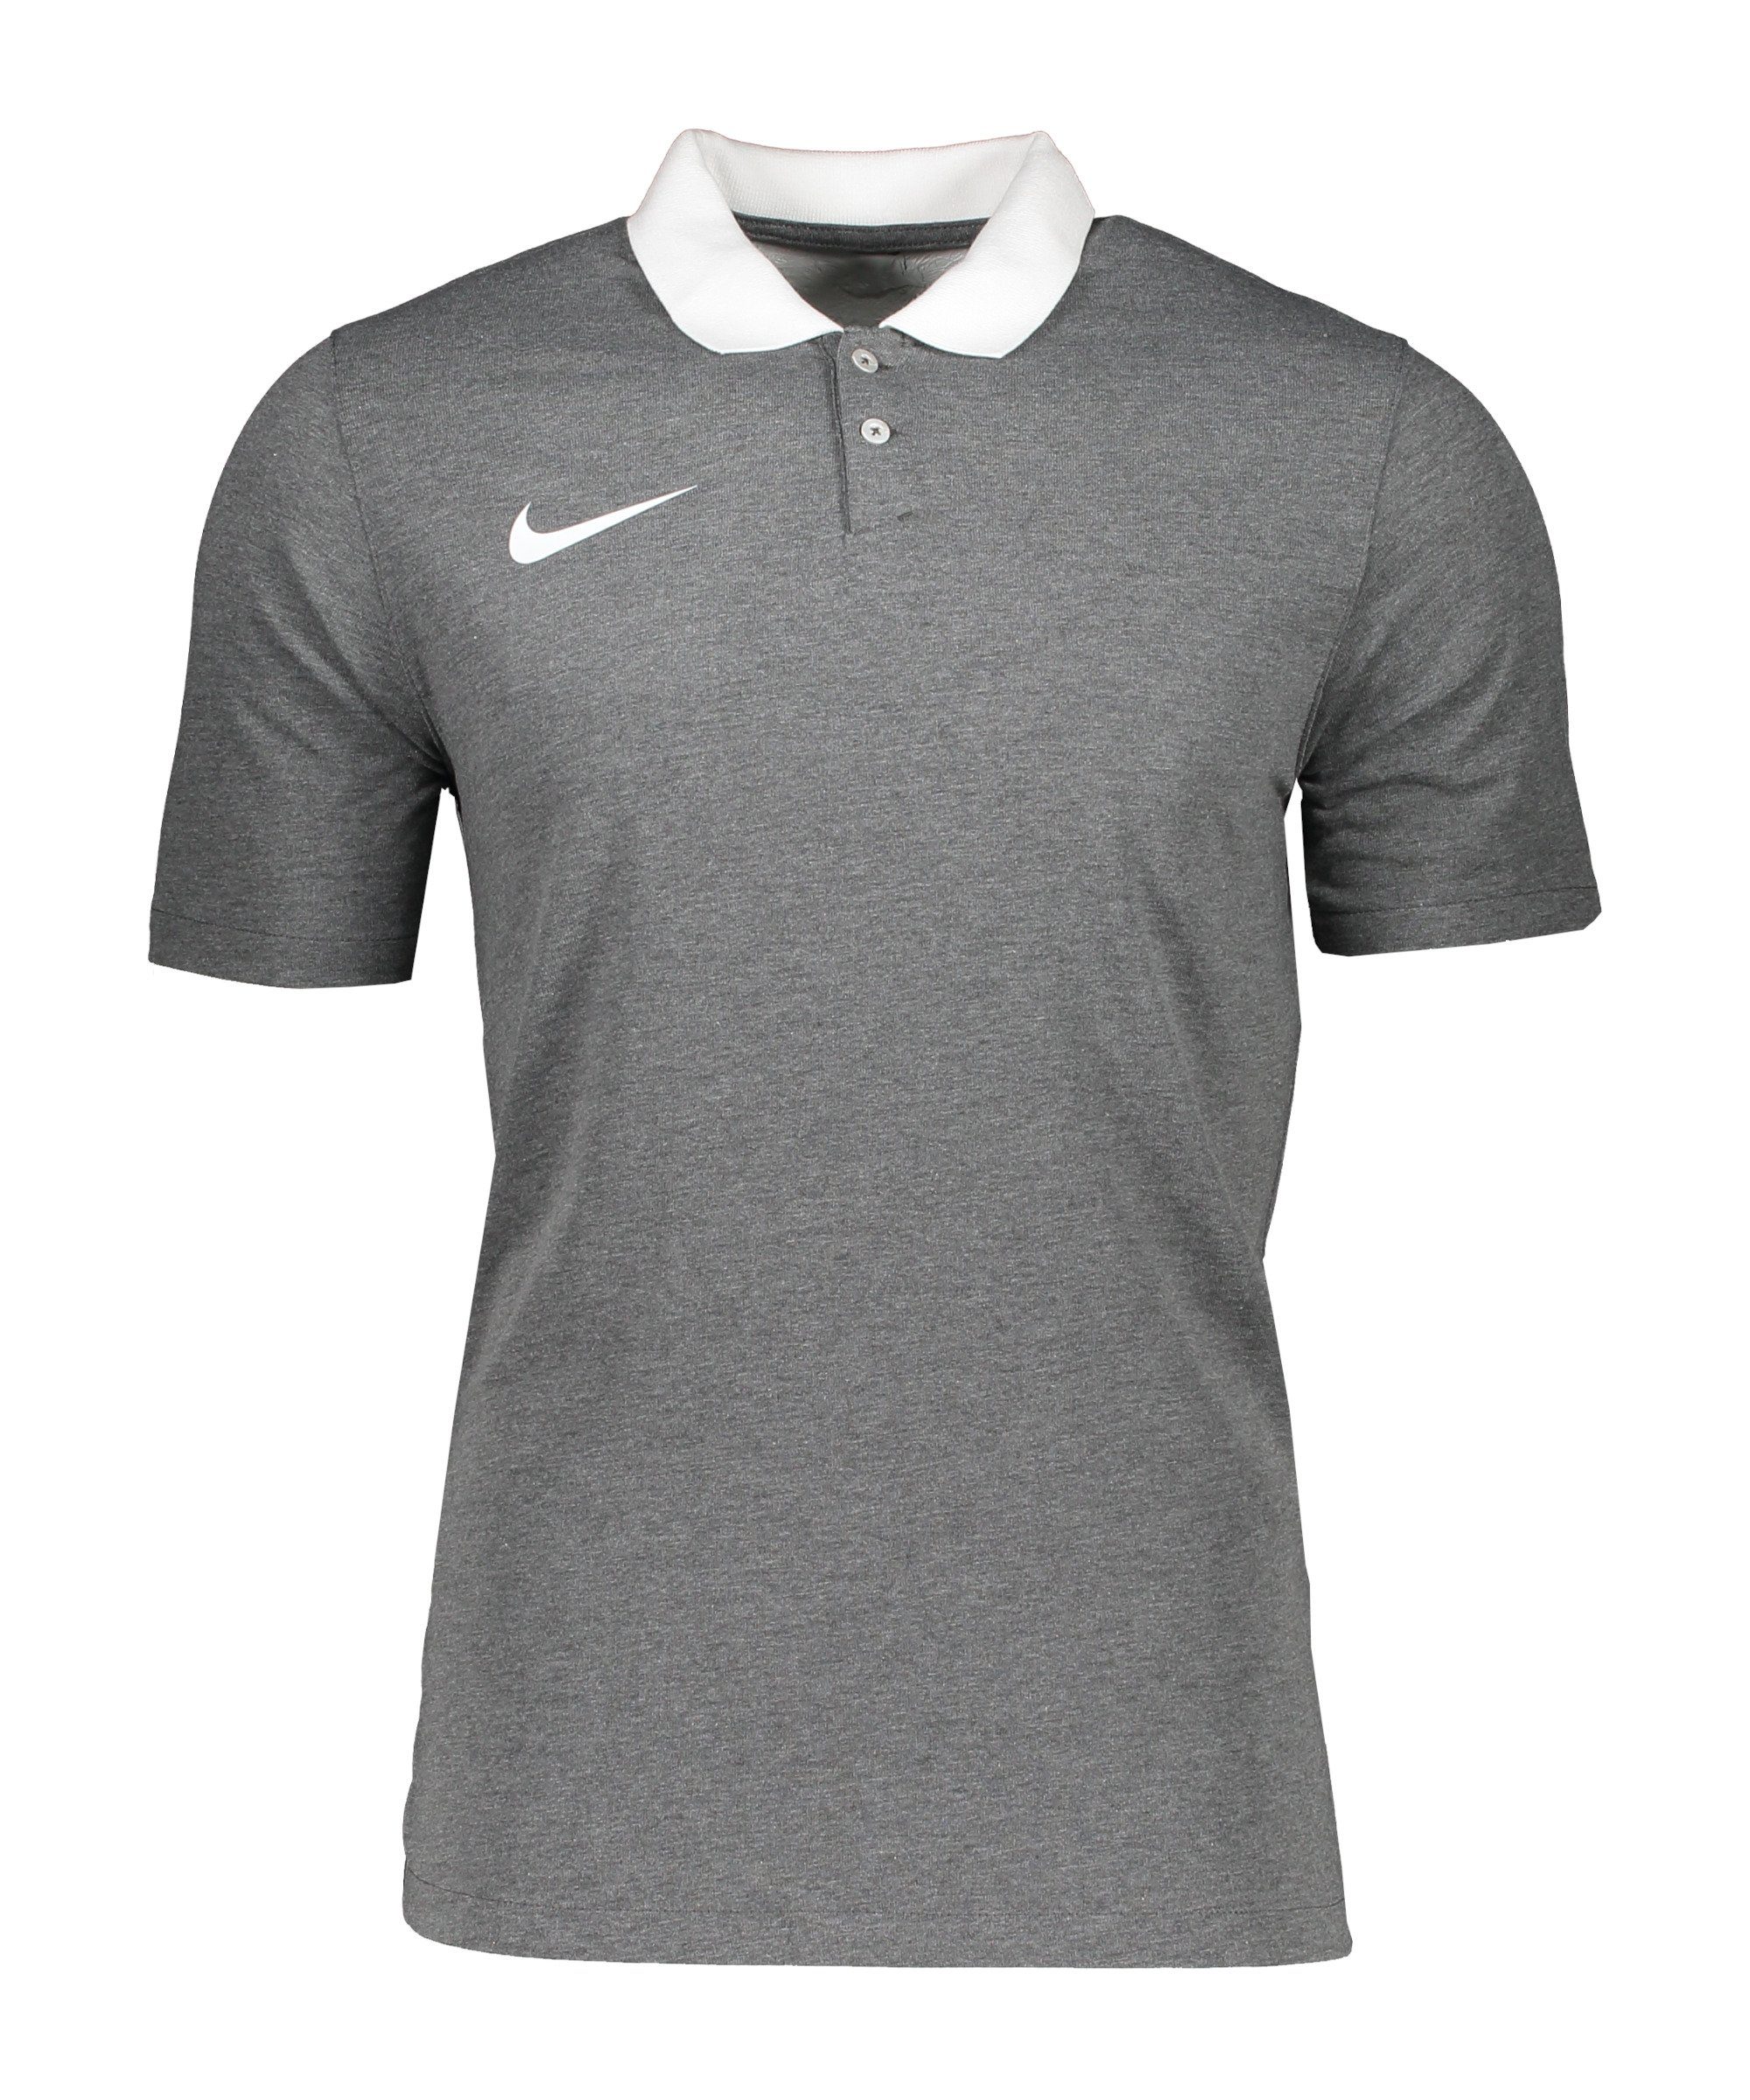 Poloshirt grauweiss 20 T-Shirt Nike default Park